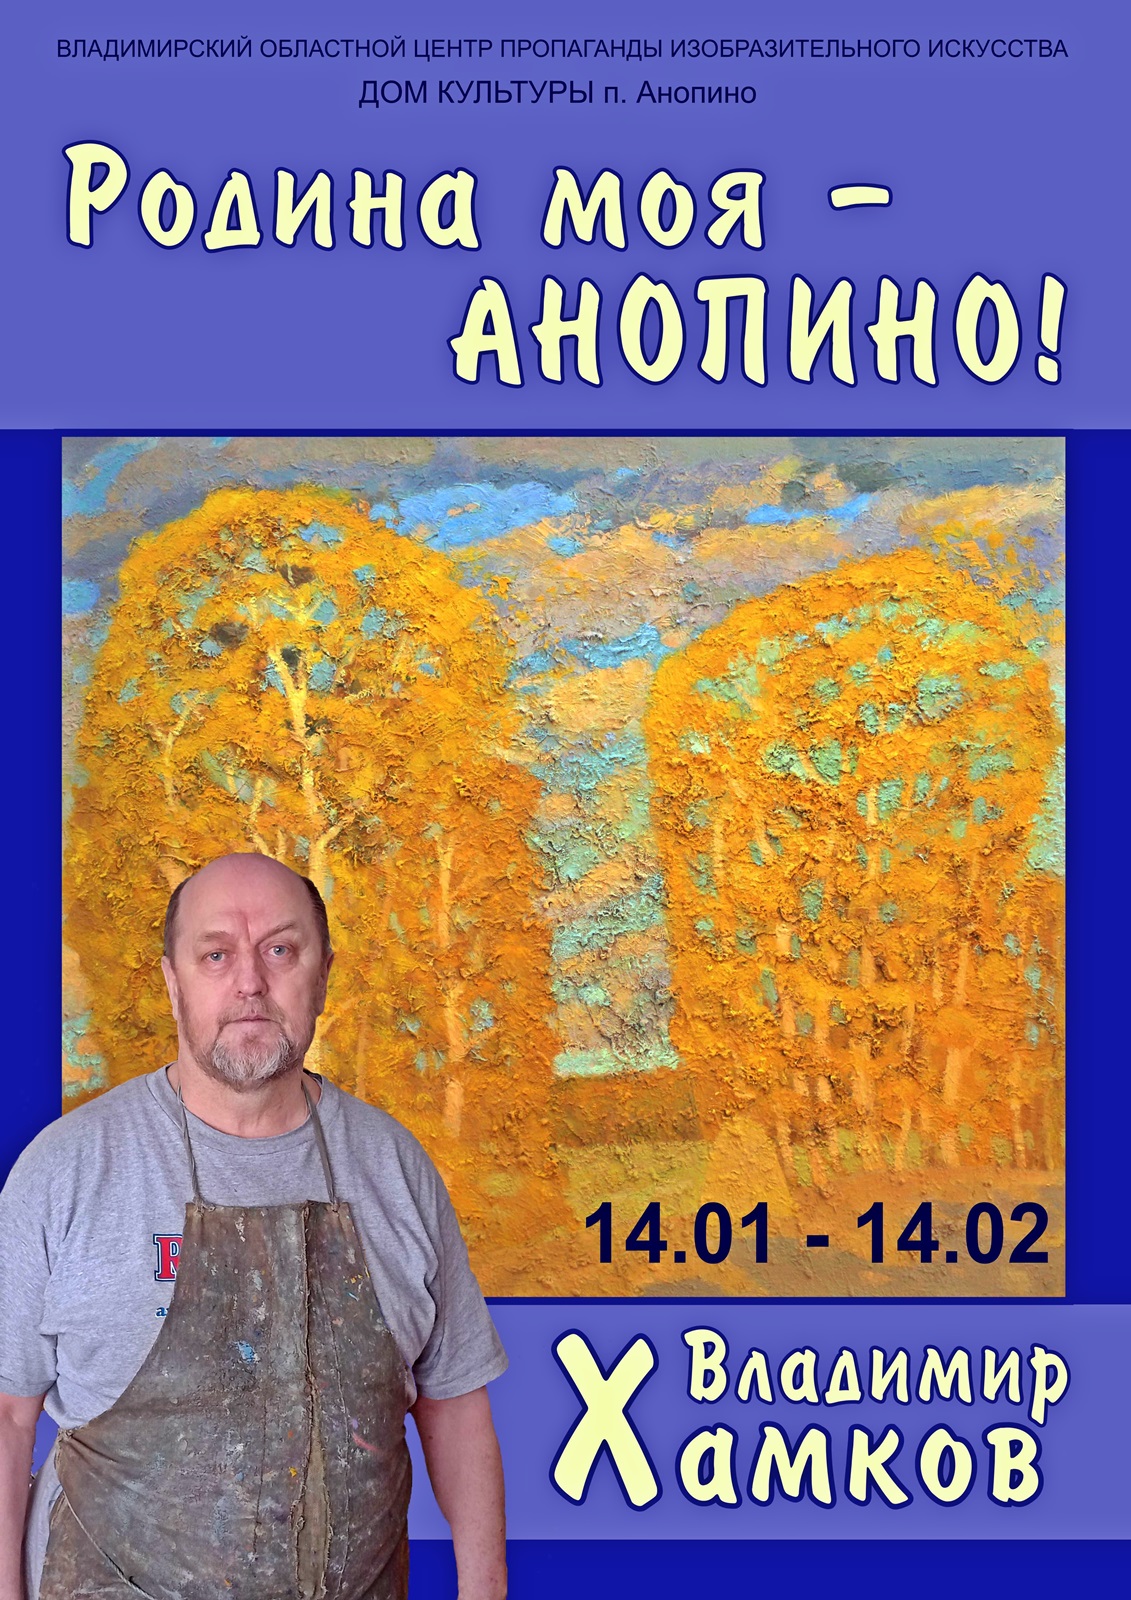 В посёлке Анопино Гусь-Хрустального района открывается выставка пейзажиста Владимира Хамкова